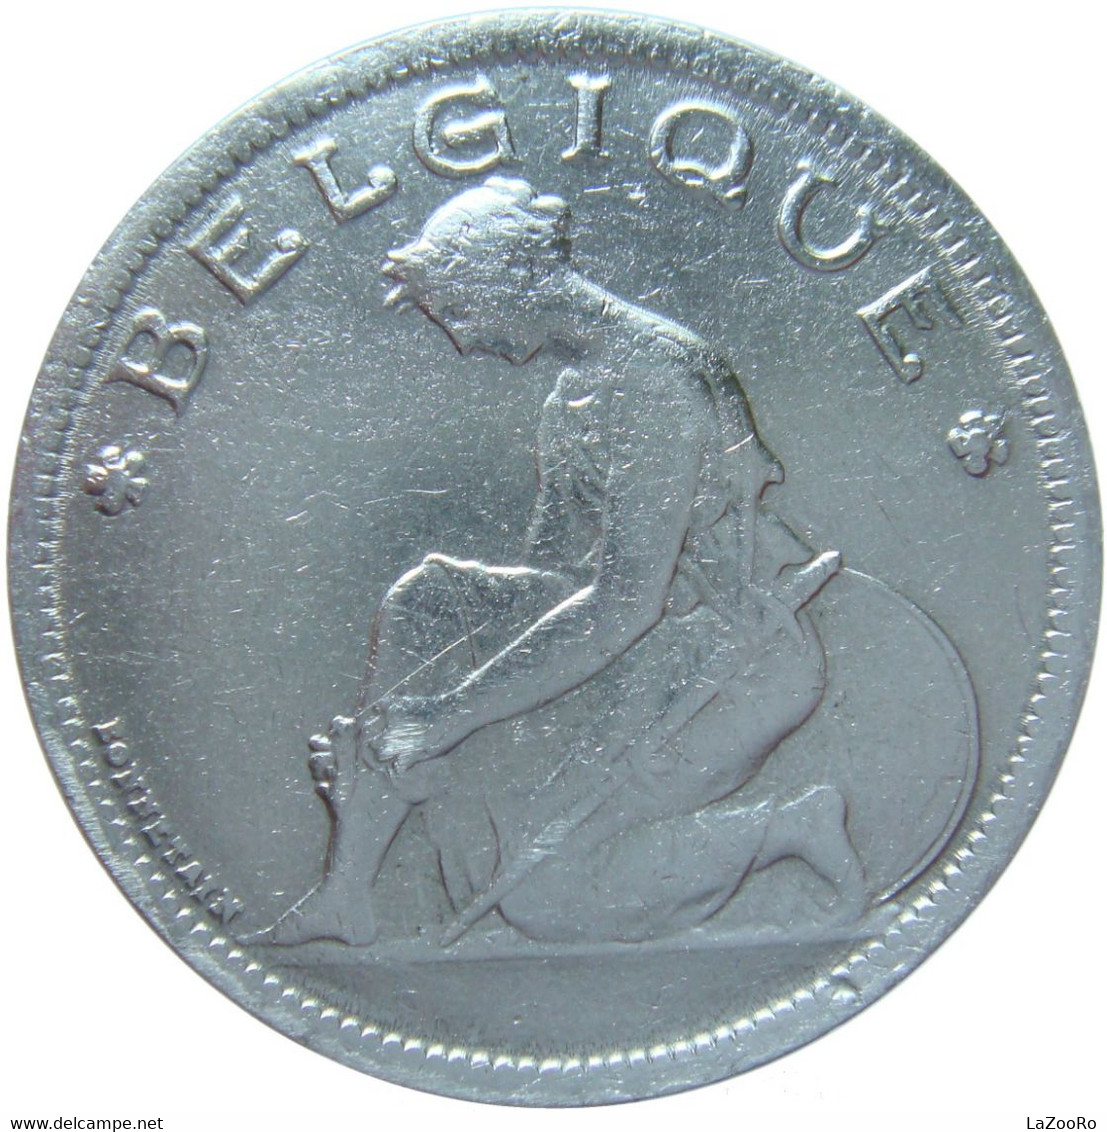 LaZooRo: Belgium 2 Francs 1930/20 VF - 2 Francs